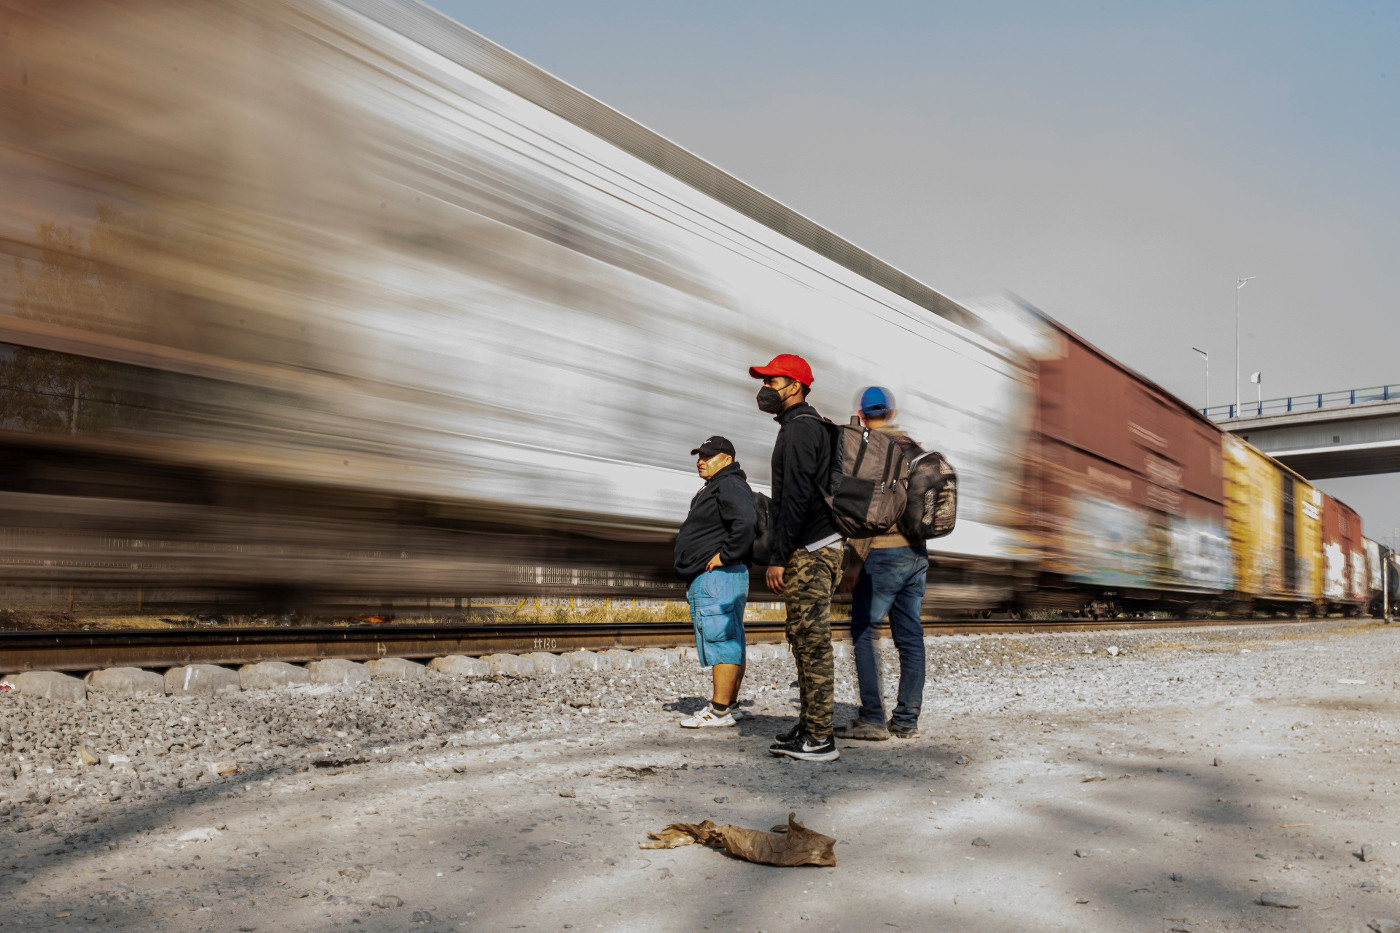 Viele Migranten aus Mittelamerika versuchen, Mexiko als blinde Passagiere auf dem Dach des Güterzugs "La Bestia" (Die Bestie) zu durchqueren. Wenn der Zug zu schnell ist, können sie nicht aufspringen. Foto (Symbolbild): Adveniat/Hans-Máximo Musielik